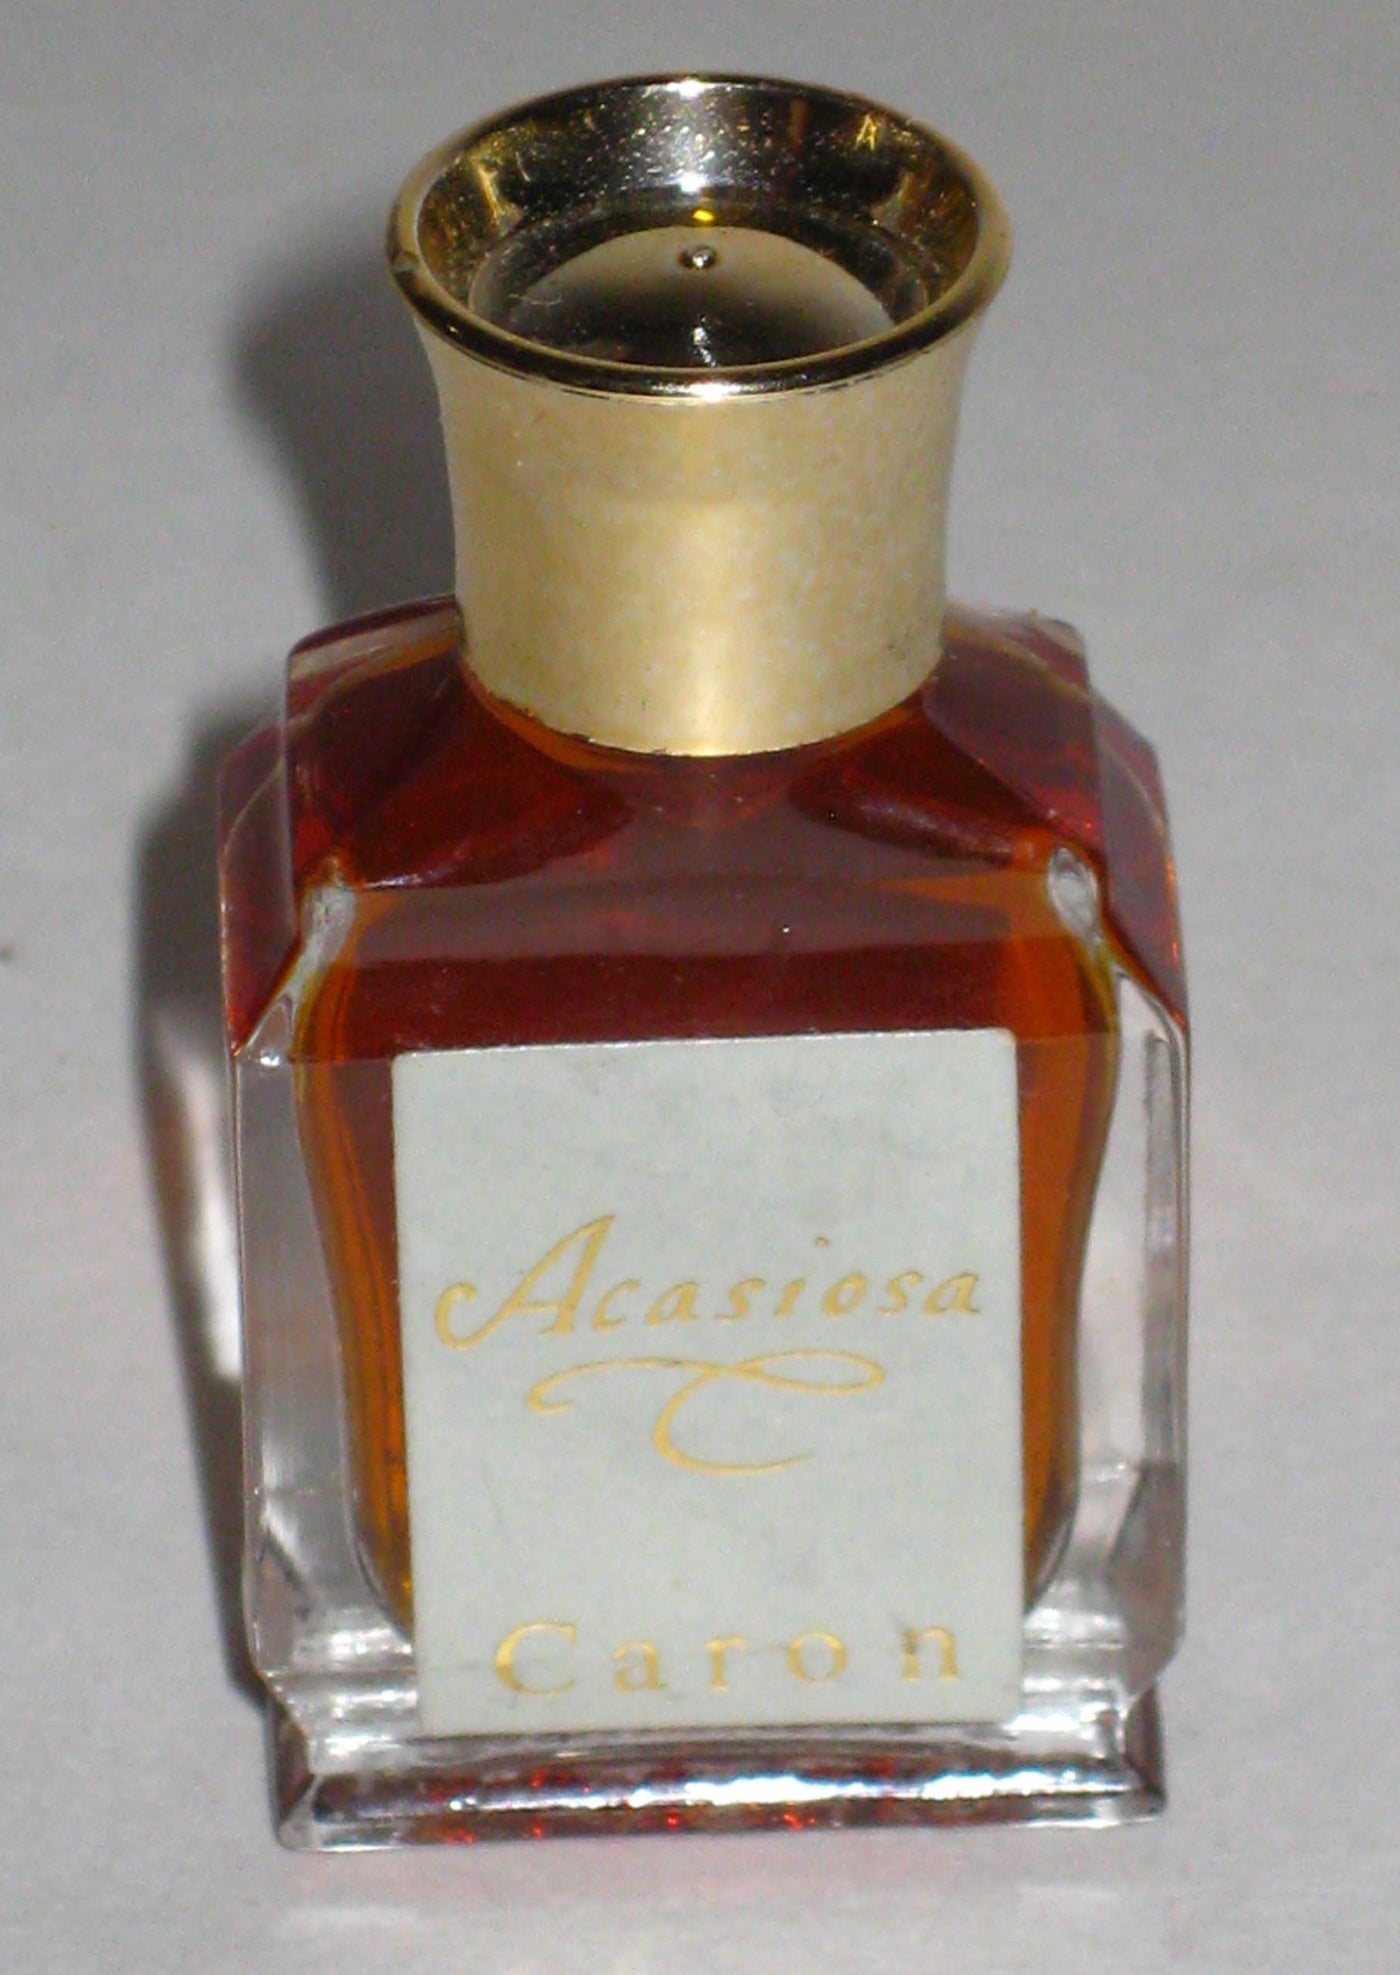 Caron Acaciosa Perfume